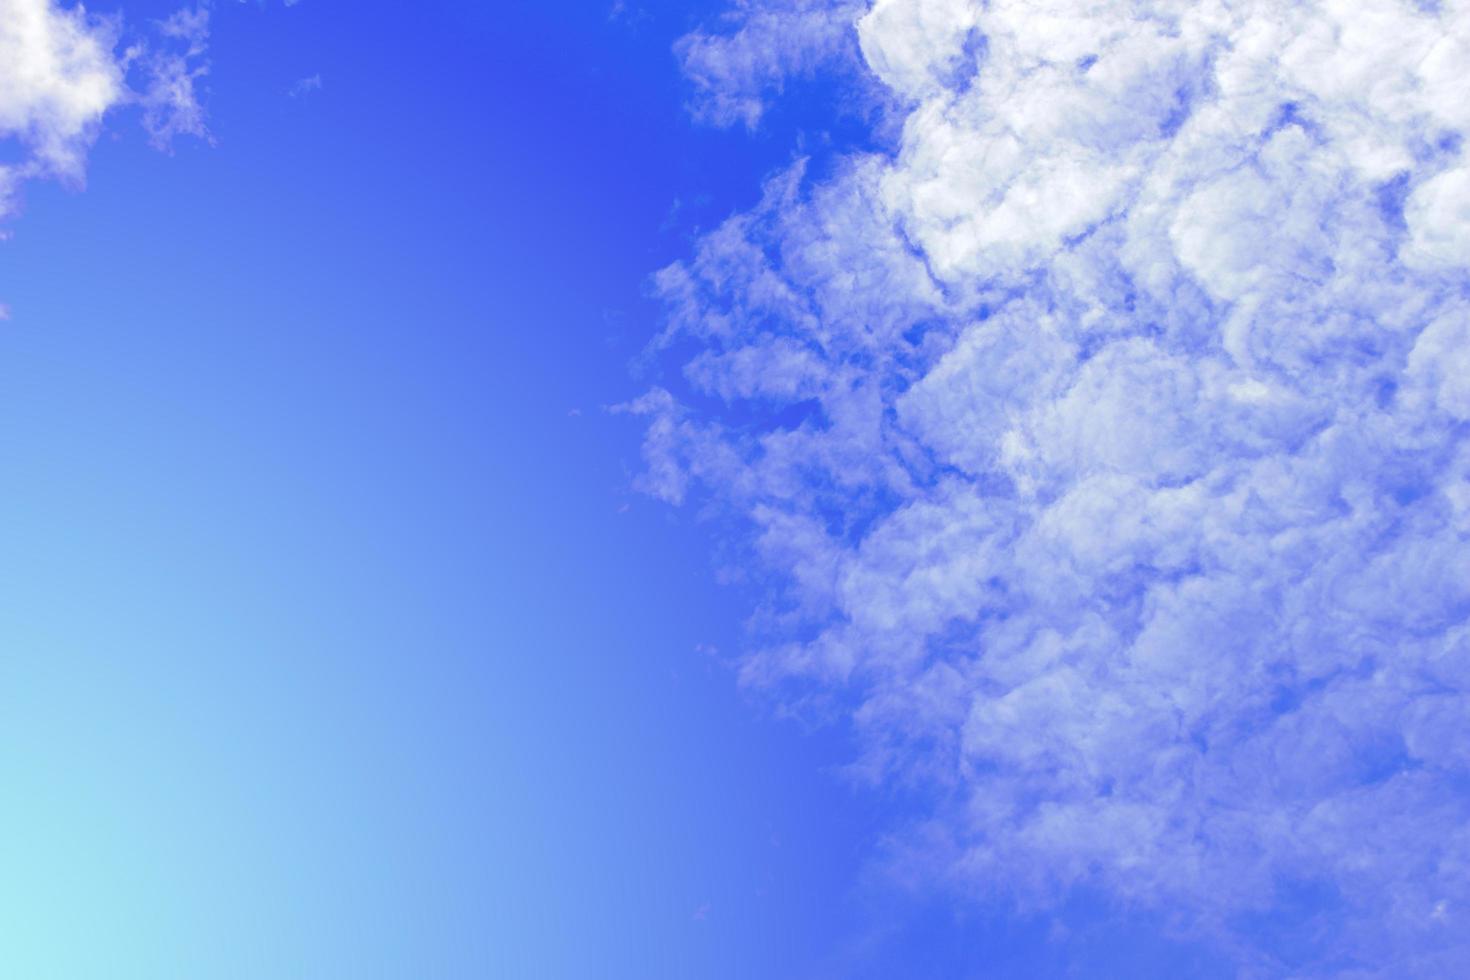 cielo azul con fondo de nubes foto